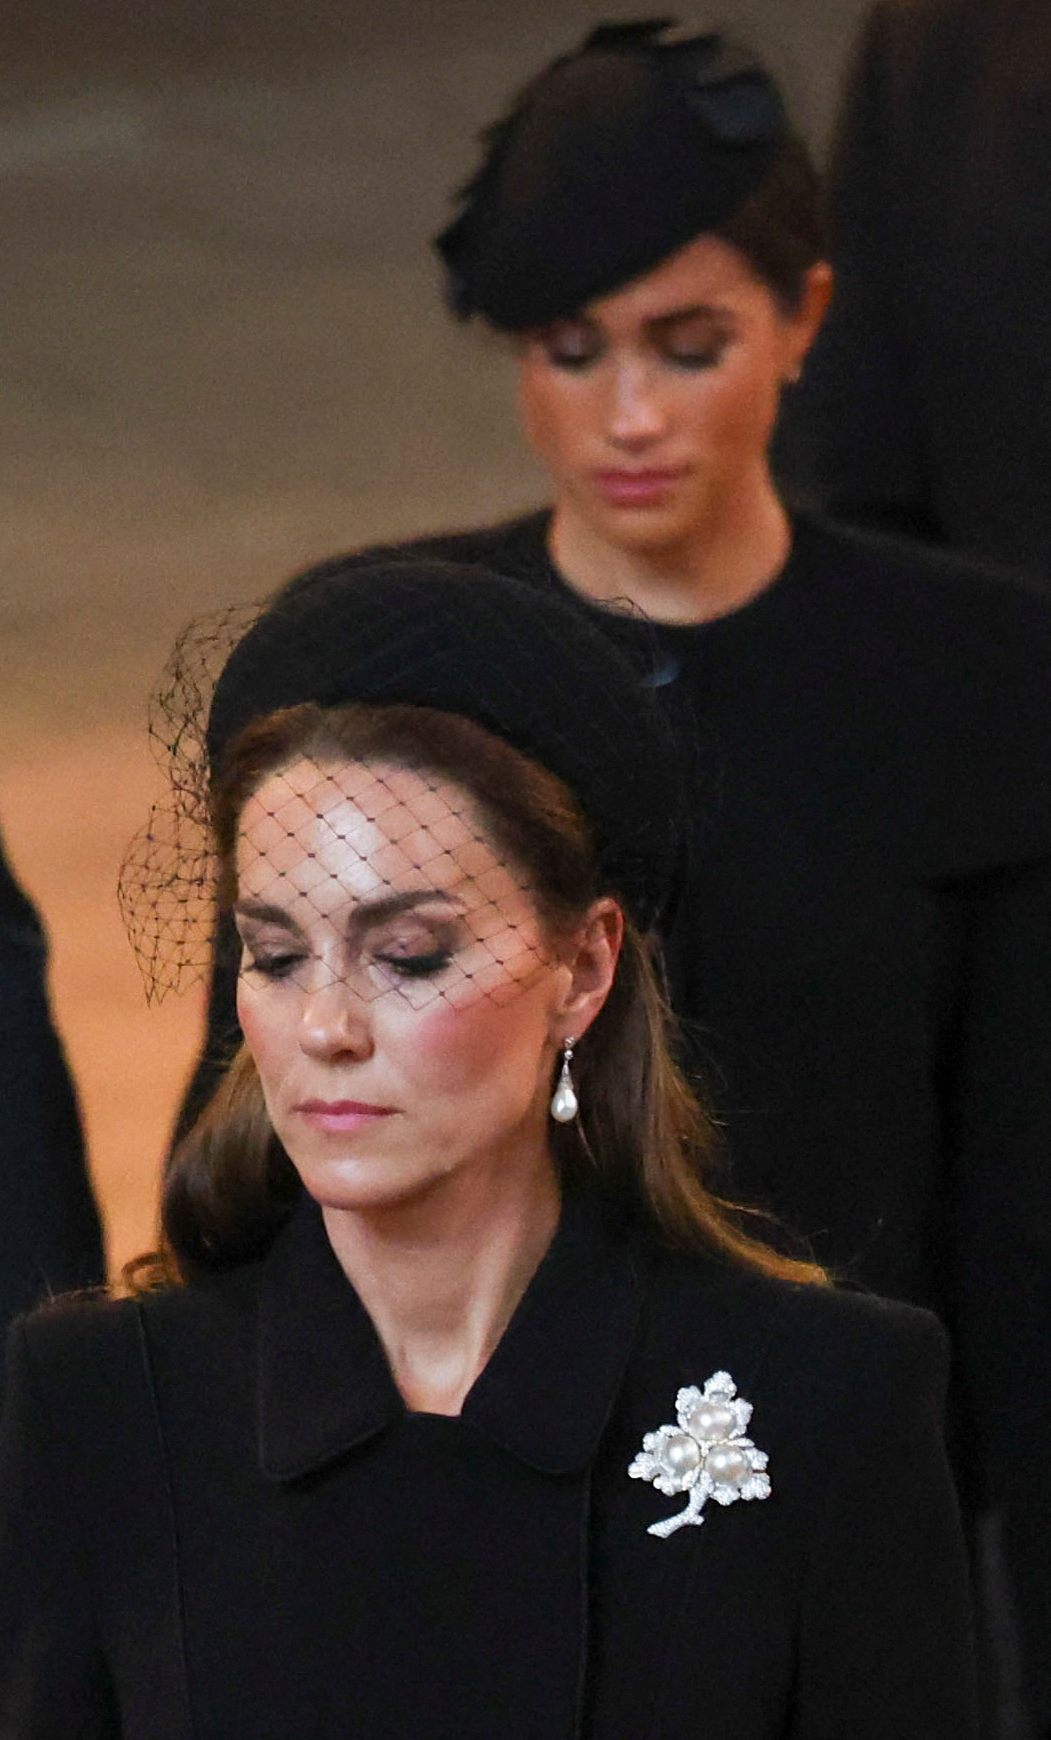 La princesse Catherine et Meghan Markle aux funérailles nationales de la reine Élisabeth II à l'abbaye de Westminster le 19 septembre 2022 à Londres, Angleterre | Source : Getty Images